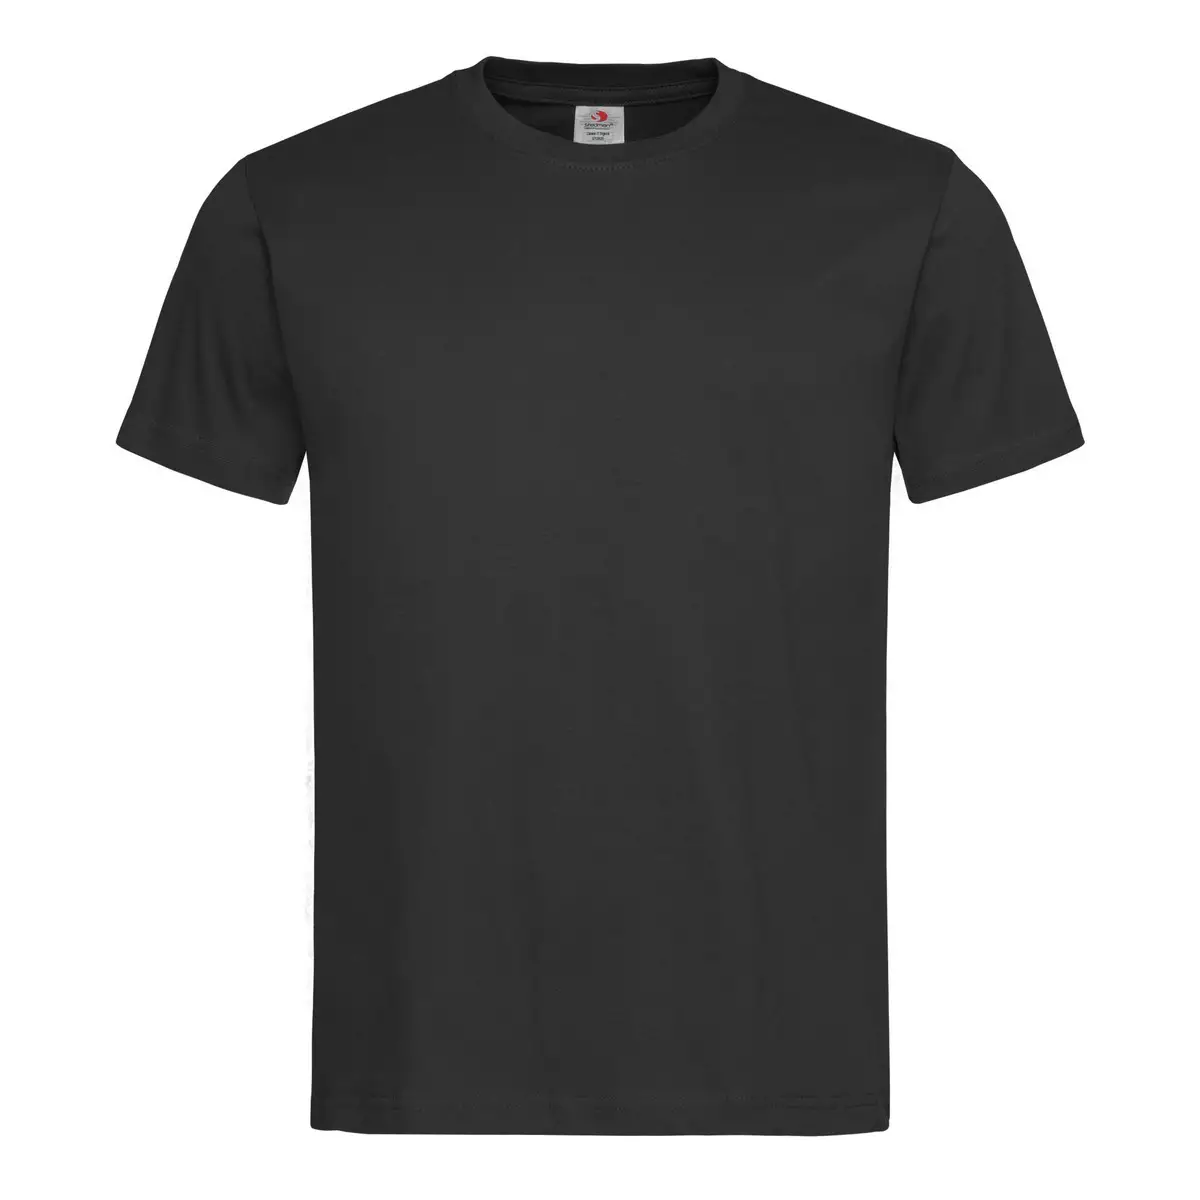 T-Shirt Unisex Manica Corta Cotone Personalizzata - Stedman